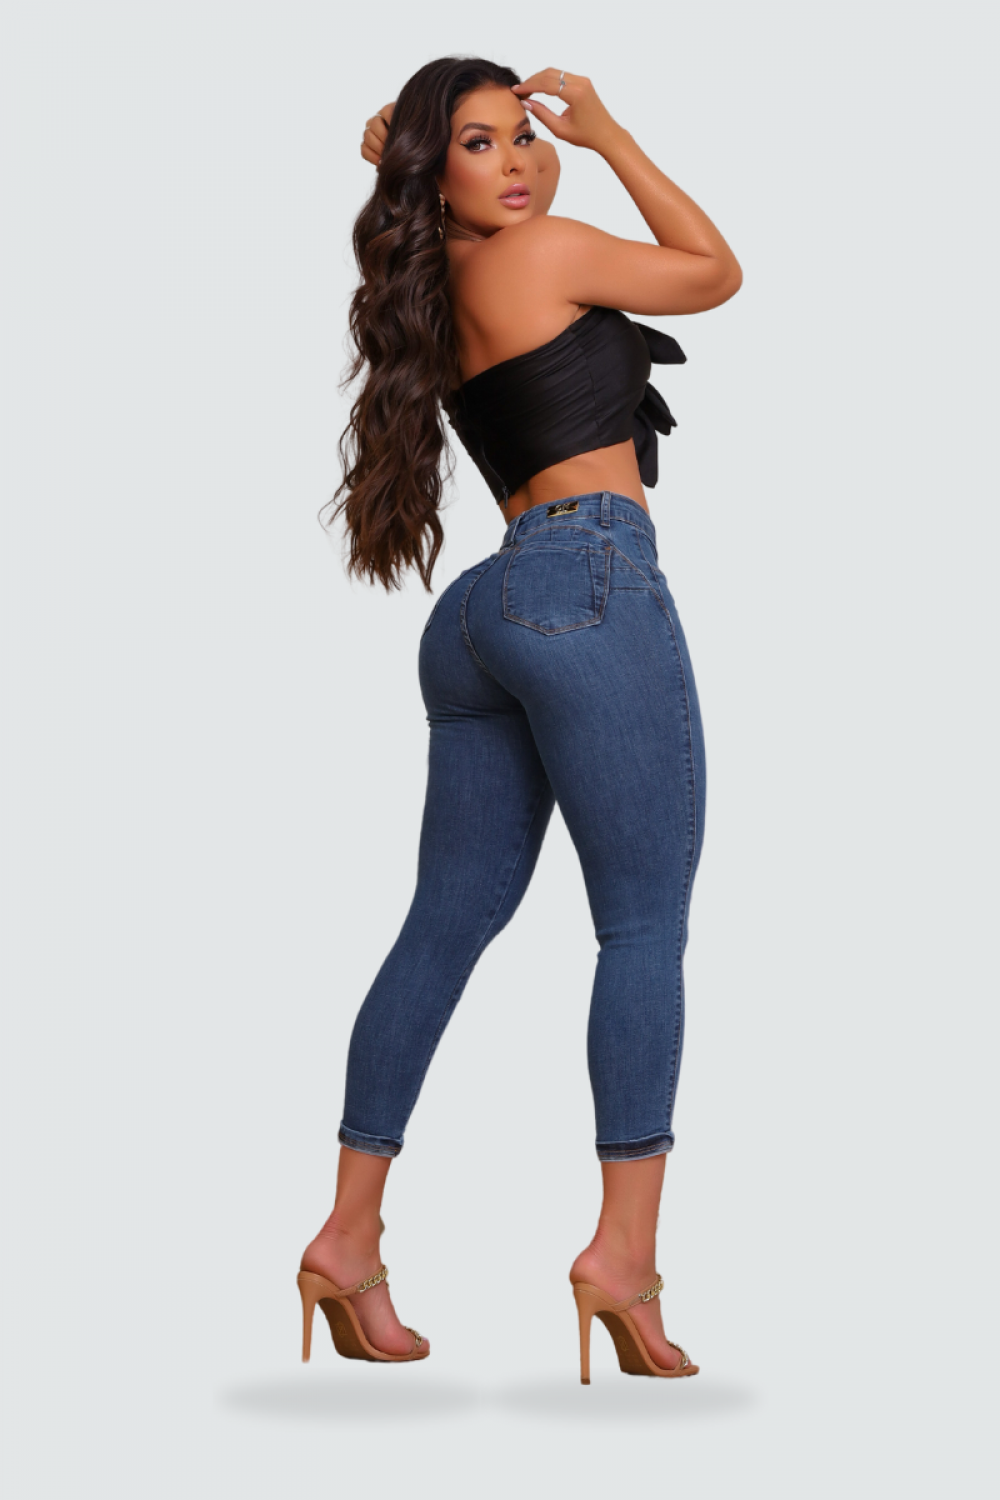 Calça Jeans Capri Feminina Modeladora Elastano Detalhe Barra em